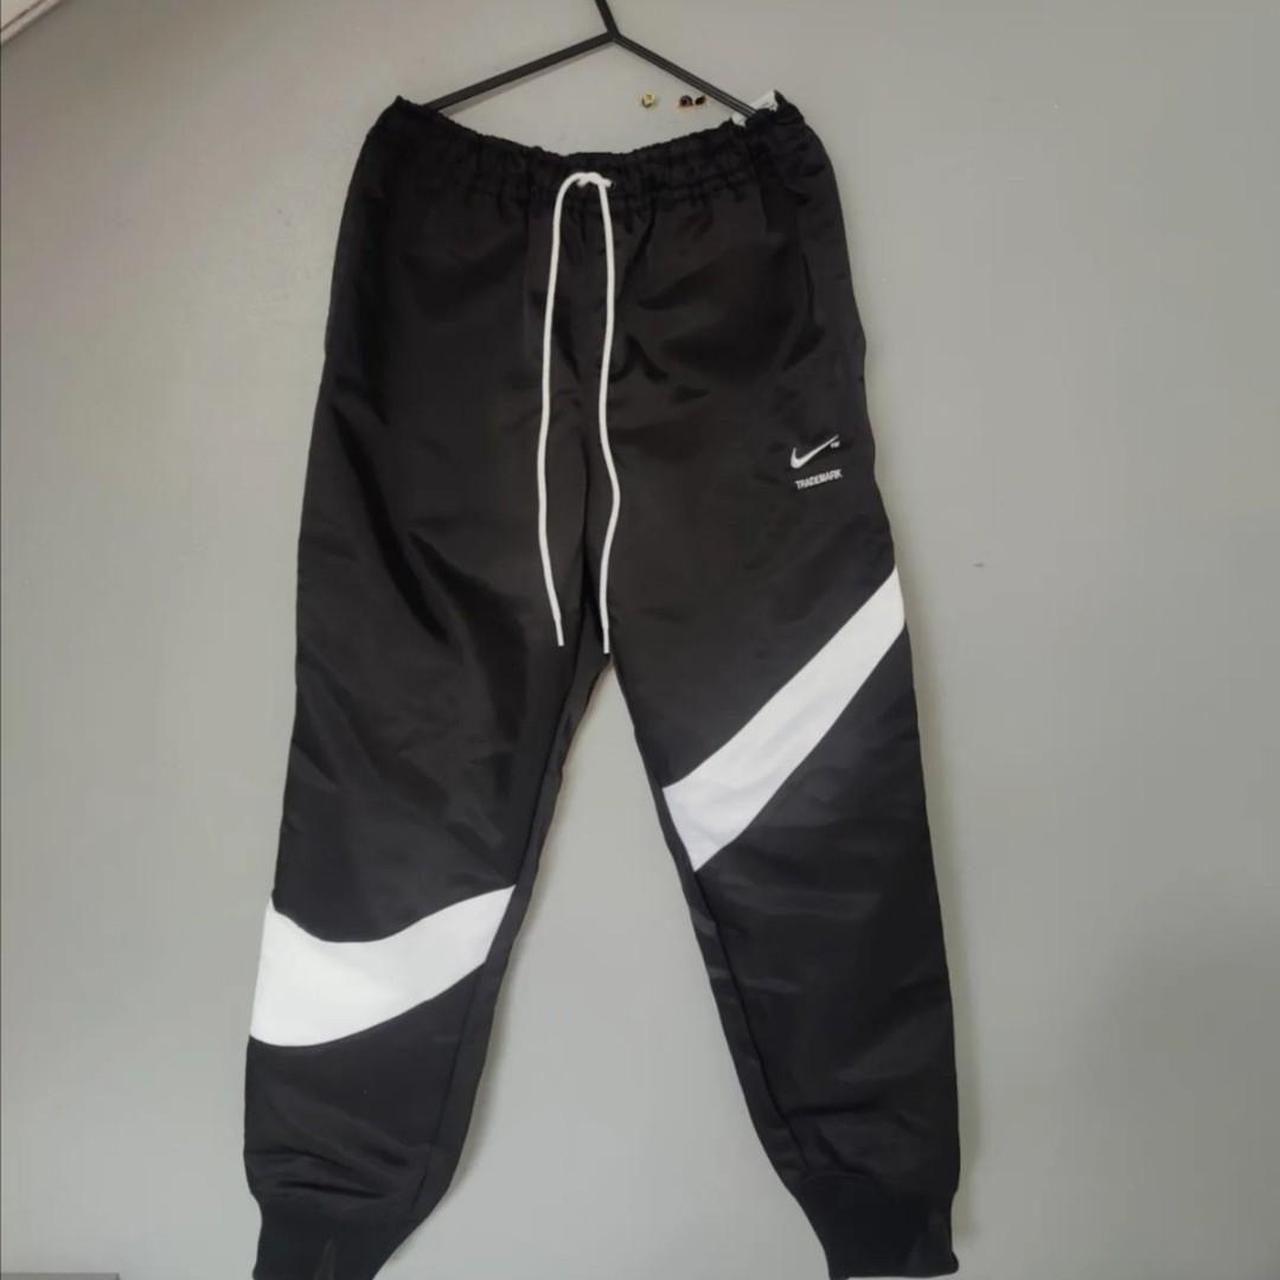 Nike Sportswear Swoosh Woven Pants Trousers... - Depop